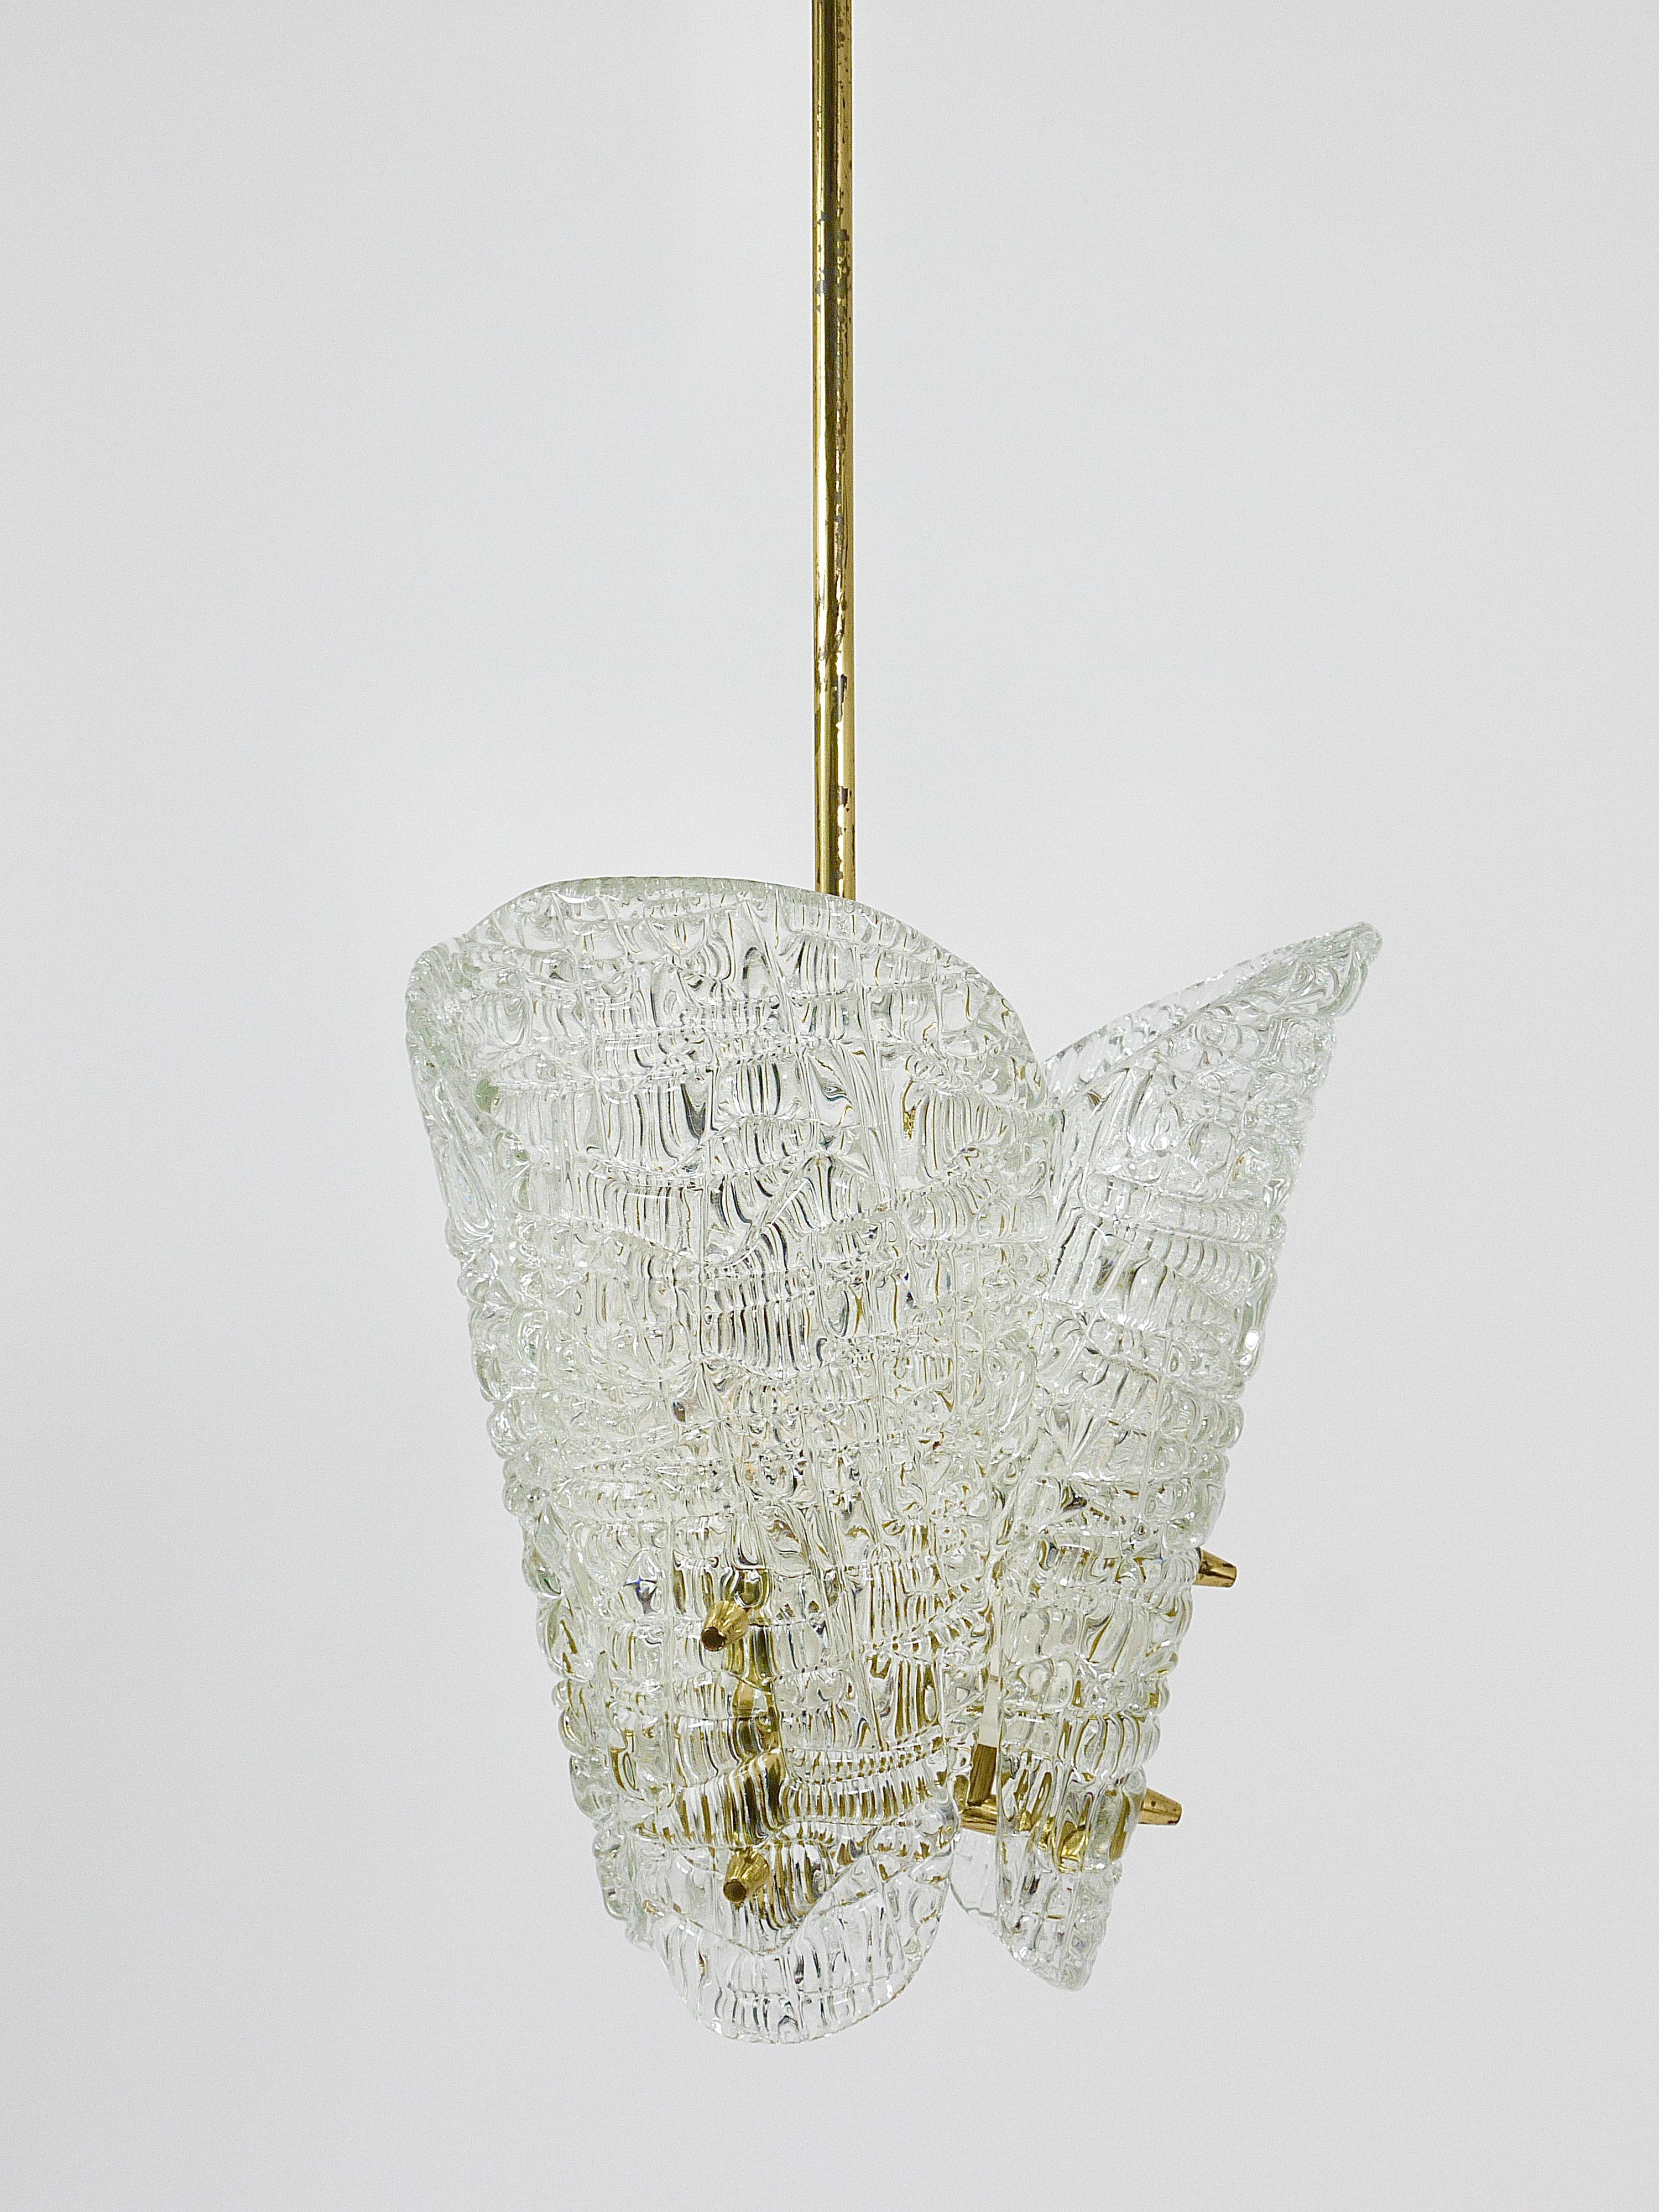 J. T. Kalmar Midcentury Brass & Textured Glass Chandelier, Vienna, 1950s For Sale 5